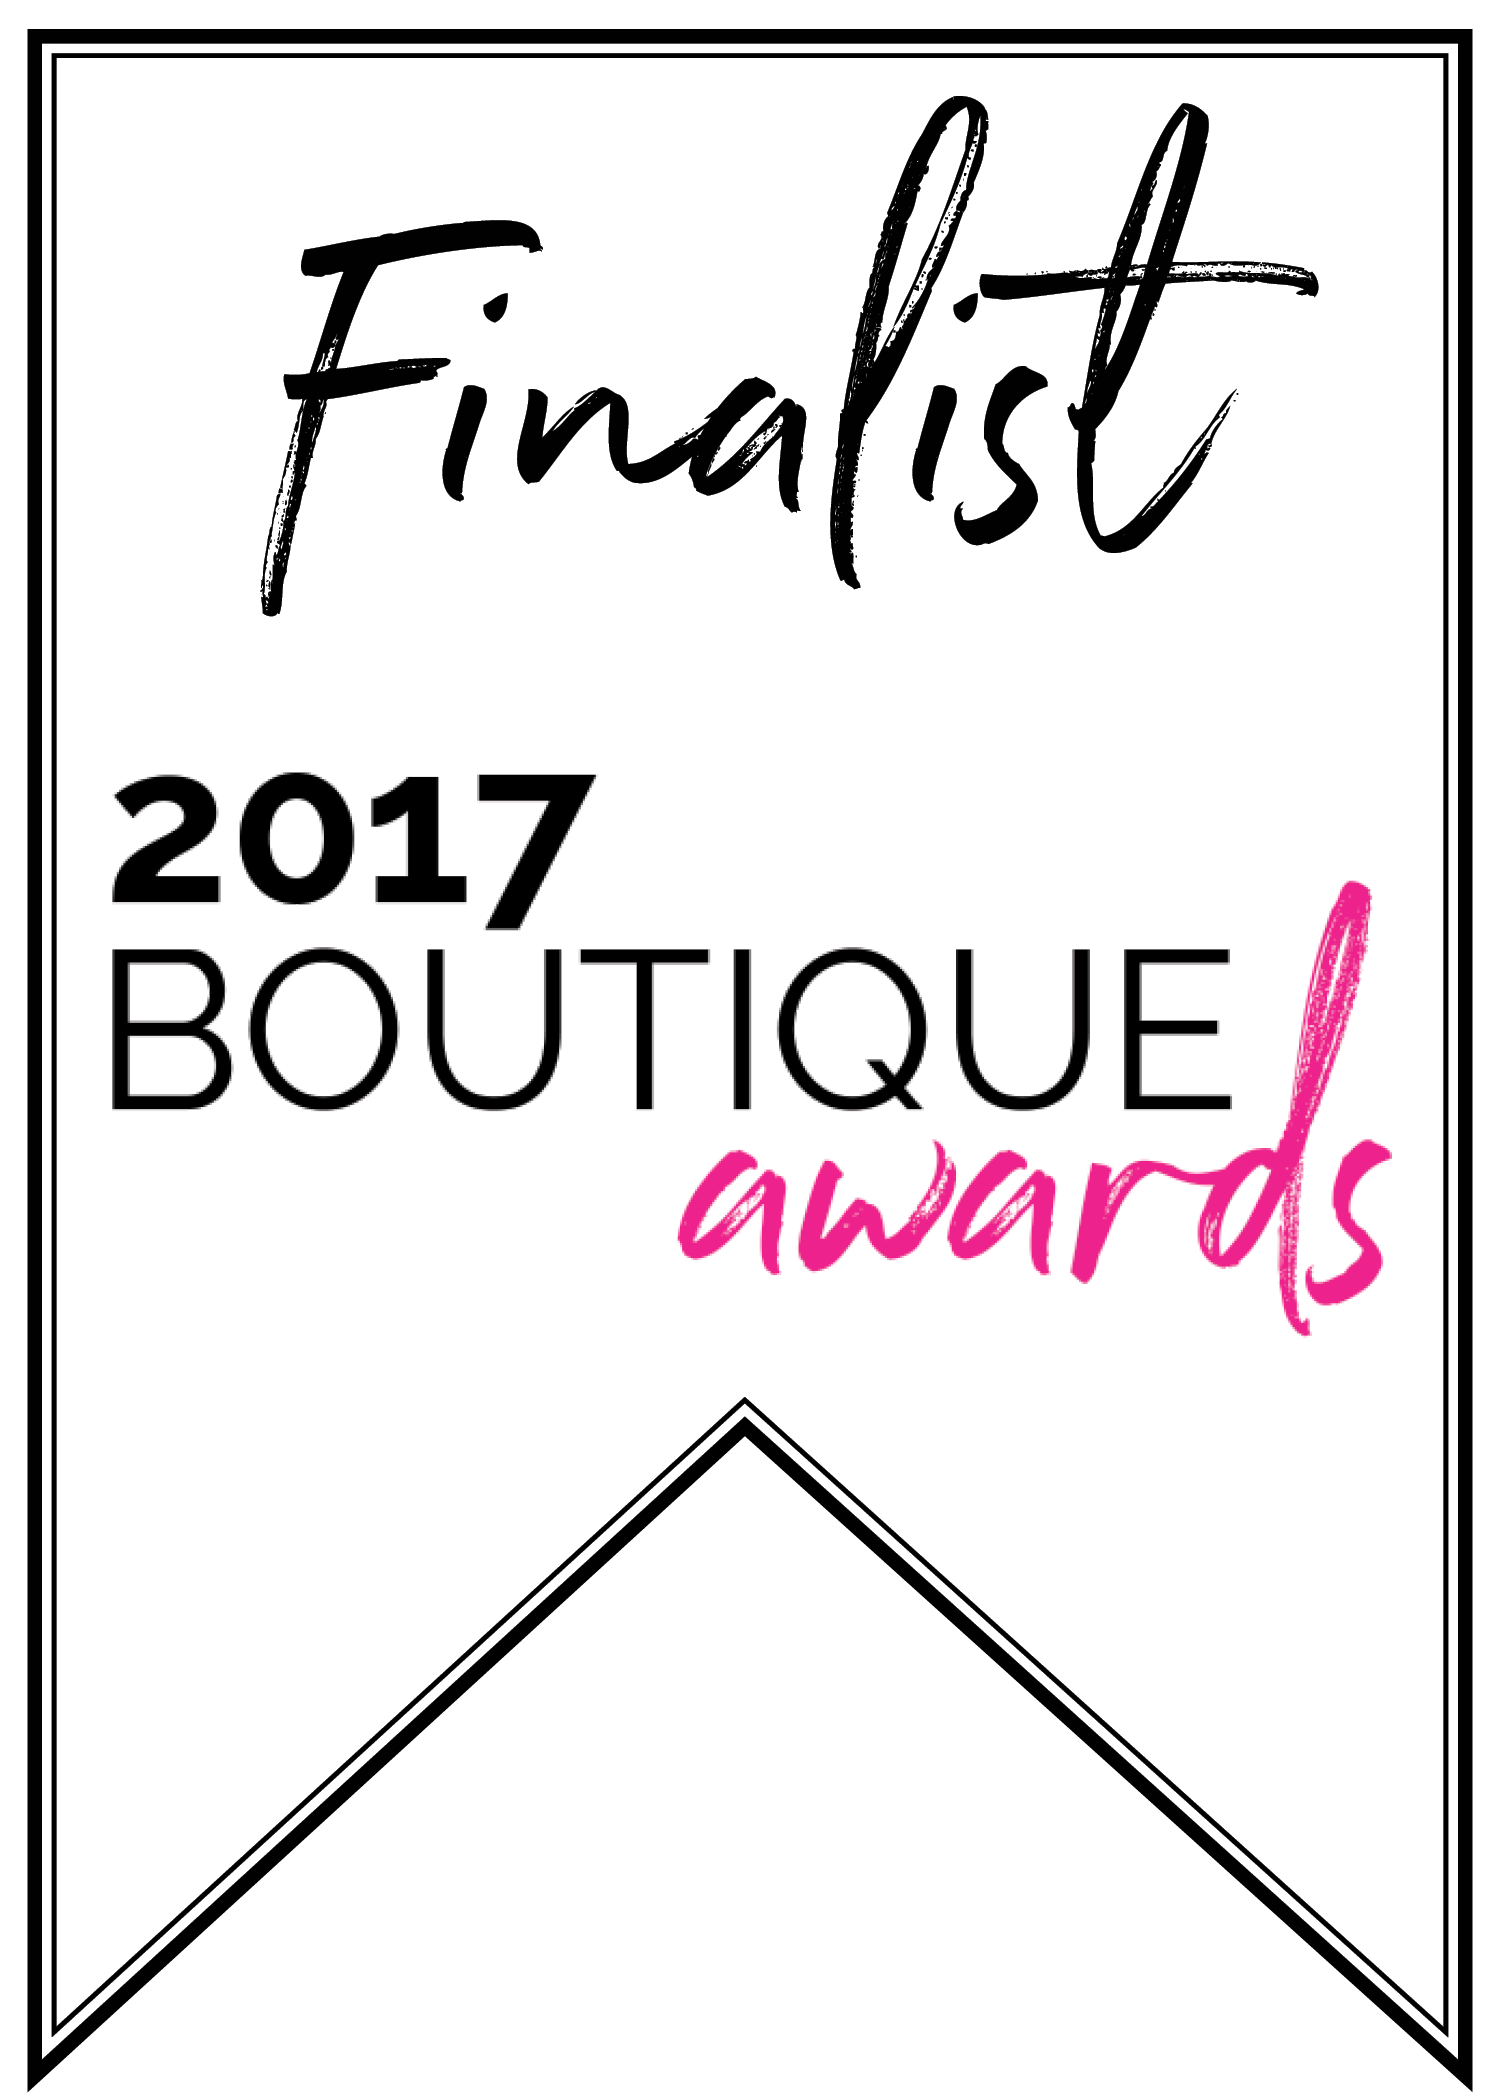 2017 Boutique Awards Finalist